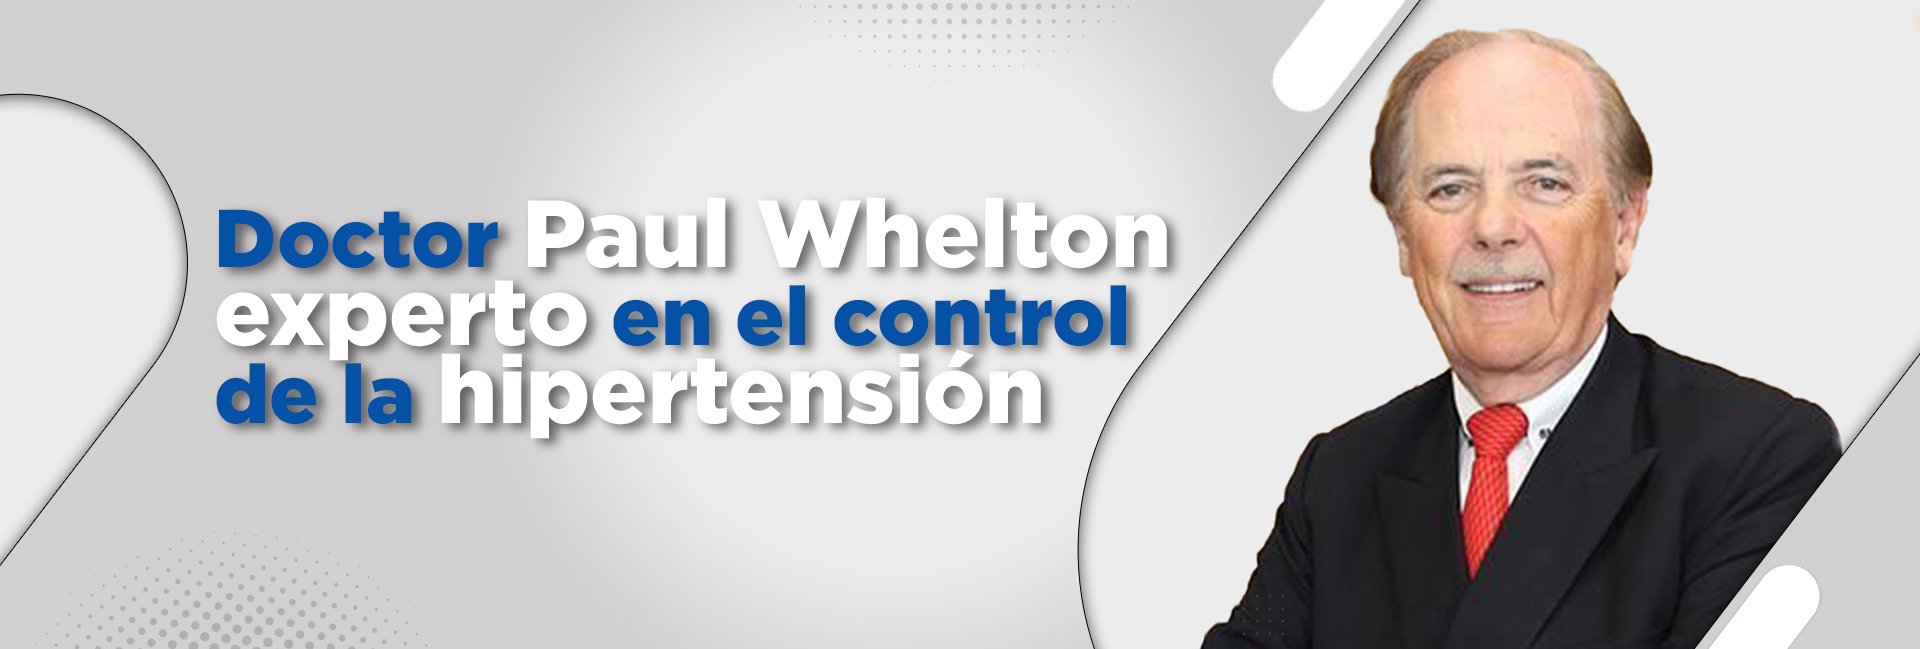 Doctor Paul K. Whelton, experto mundial en el control de la hipertensión, ofrecerá conferencia en la UDES